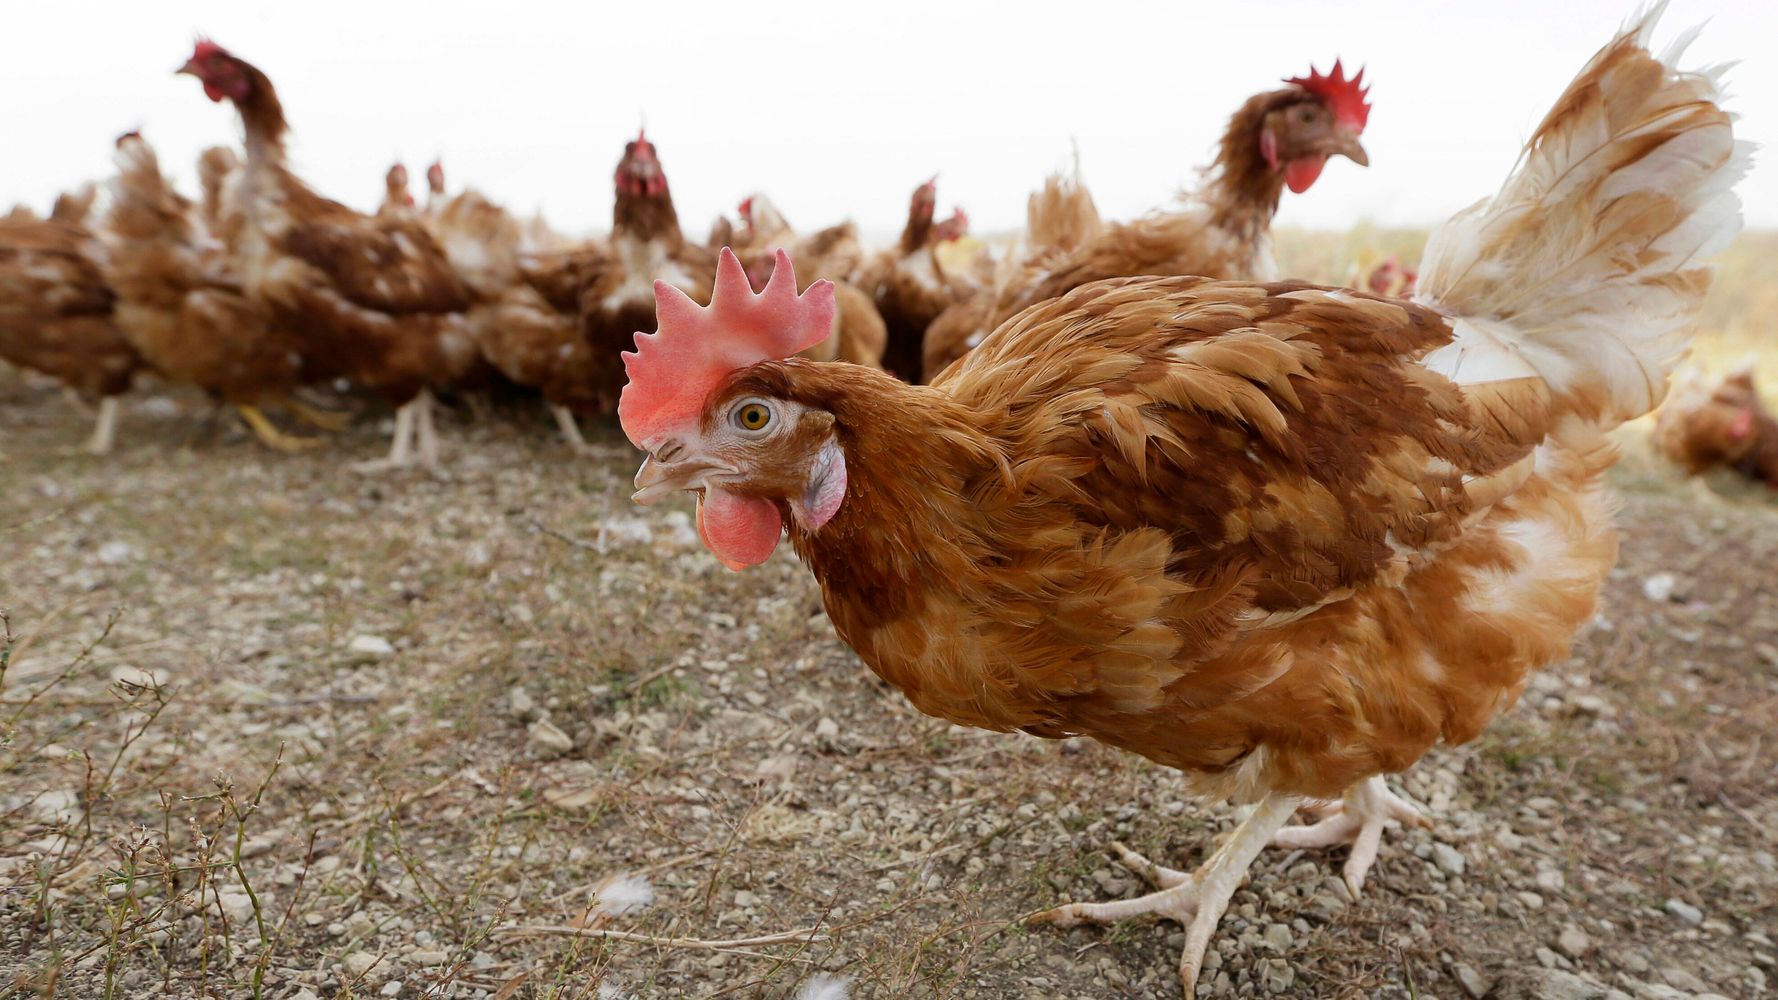 5,3 milionu kuřat zabitých v Iowě kvůli vypuknutí ptačí chřipky